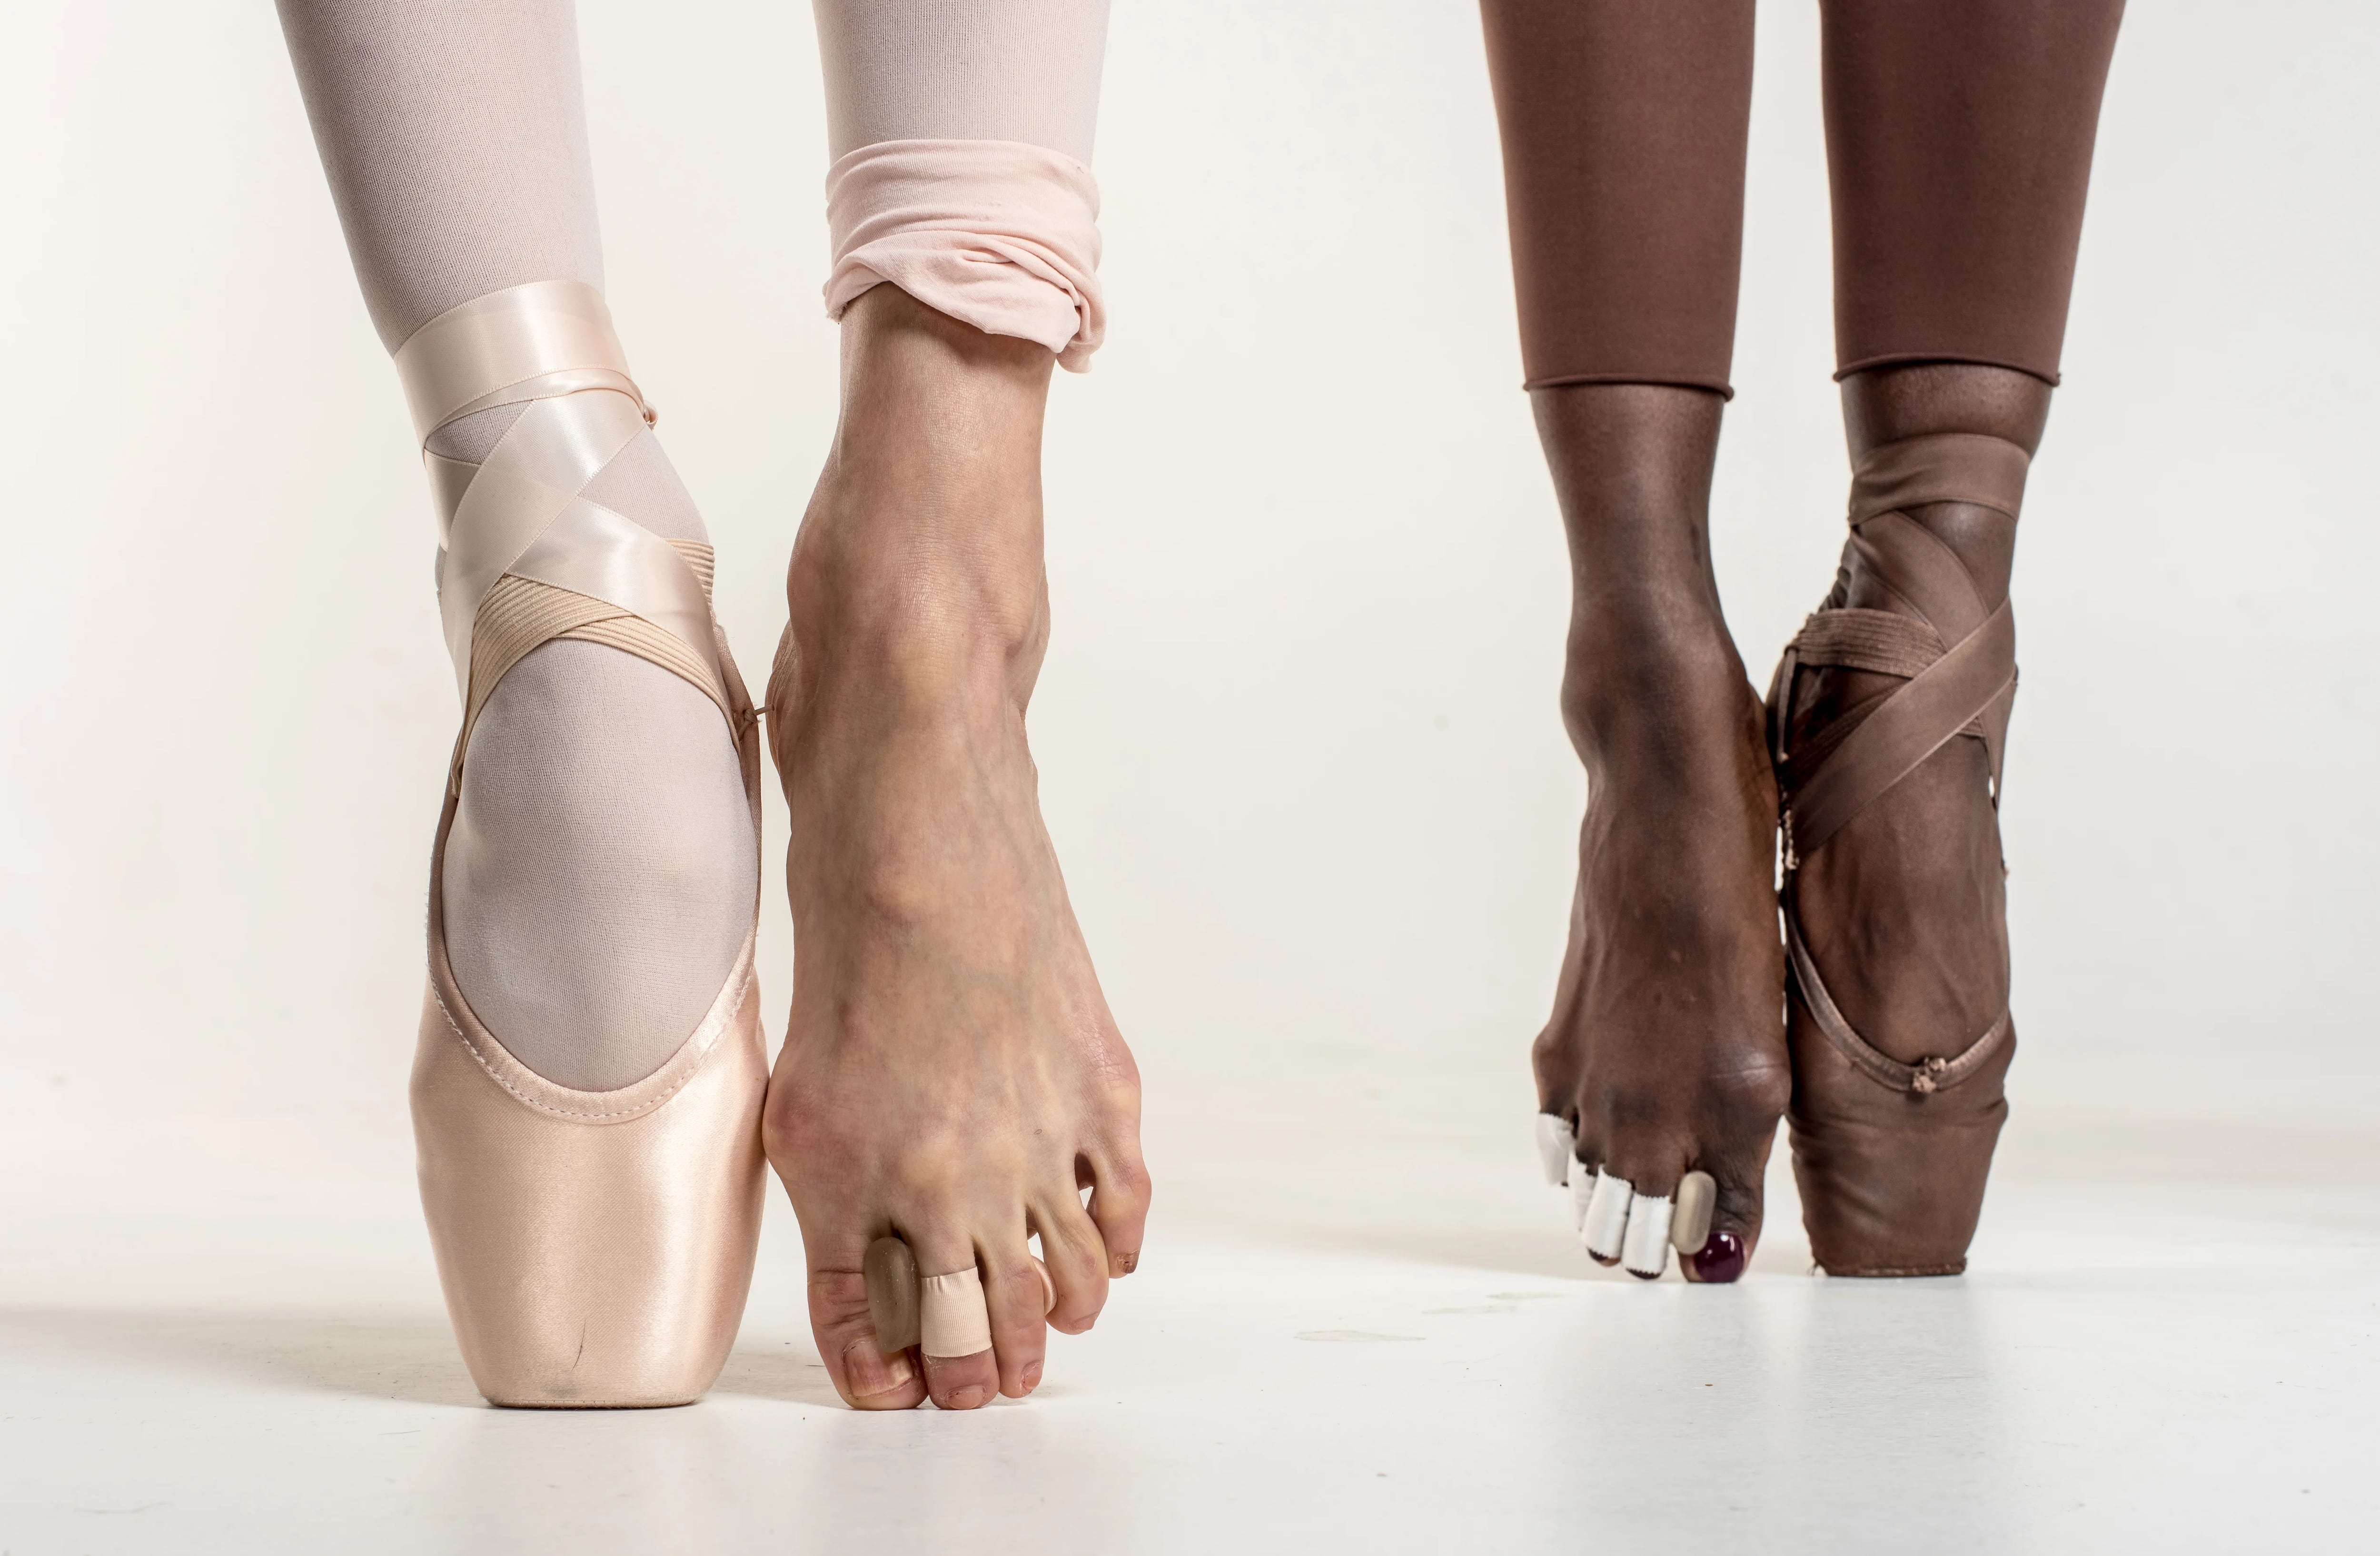 En puntas de pie: la agonía esconde detrás de bellos pasos ballet - Infobae